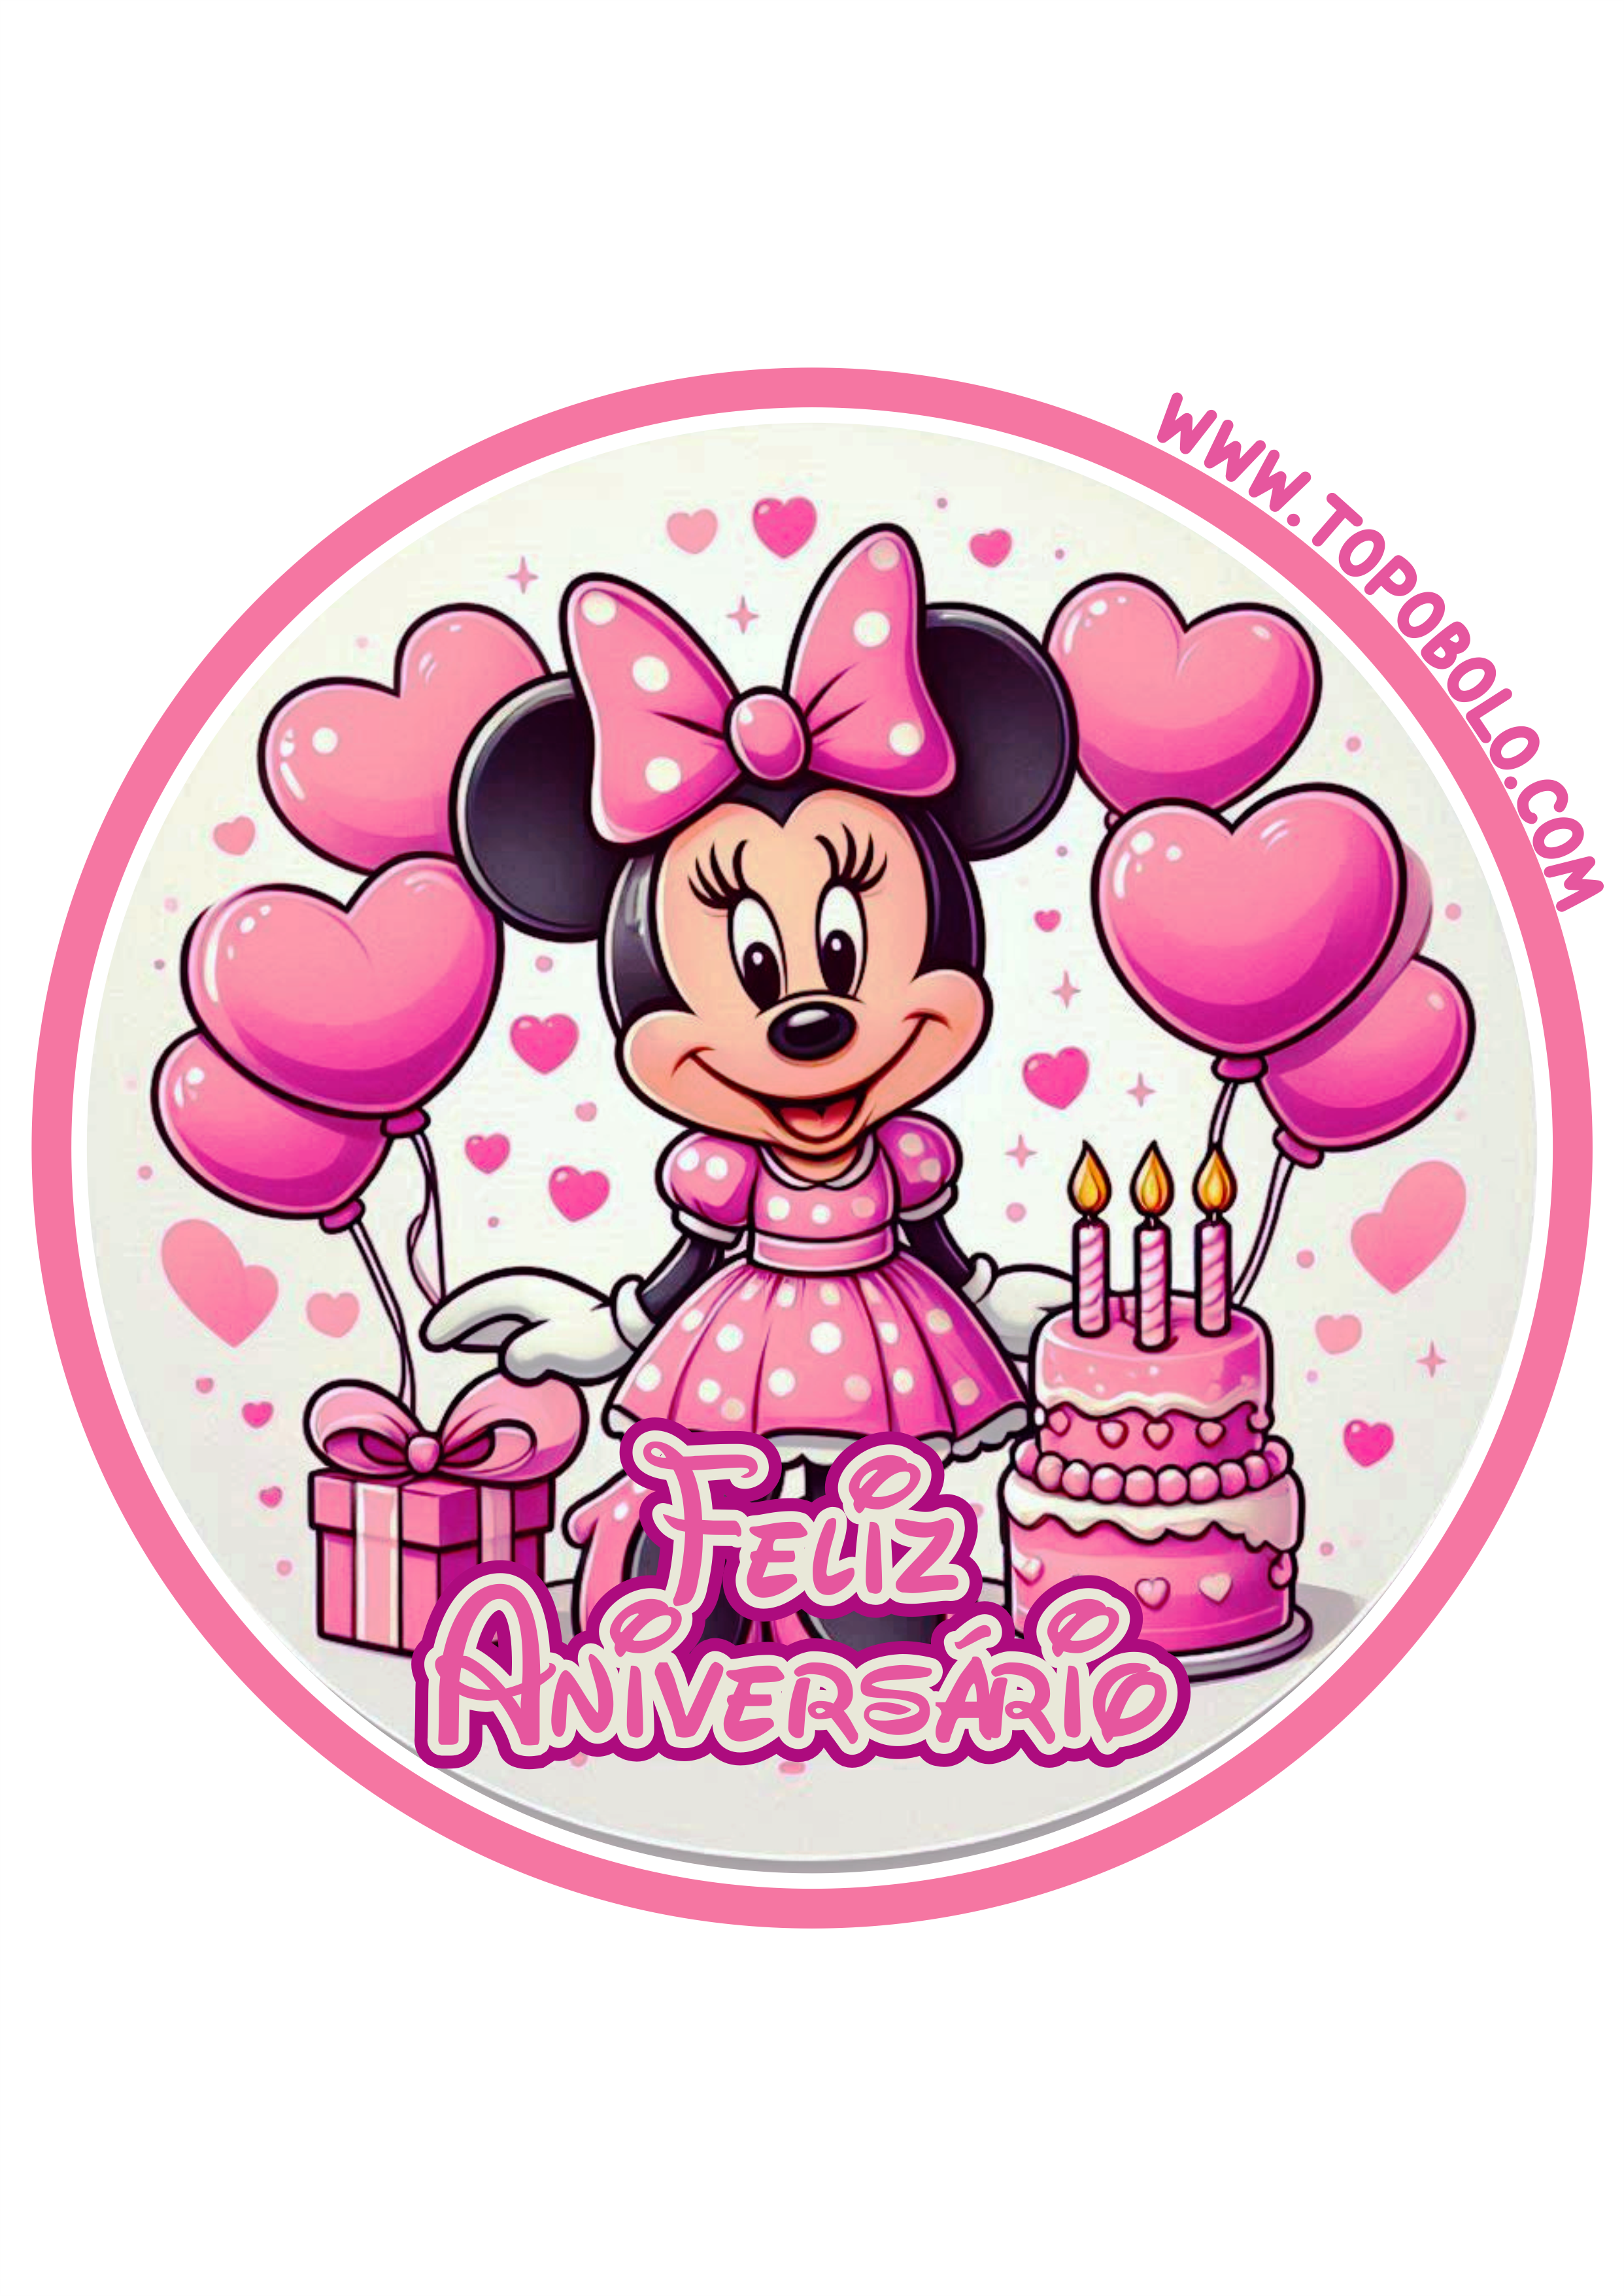 Decoração de aniversário Minnie rosa adesivo redondo para imprimir festa infantil papelaria criativa png